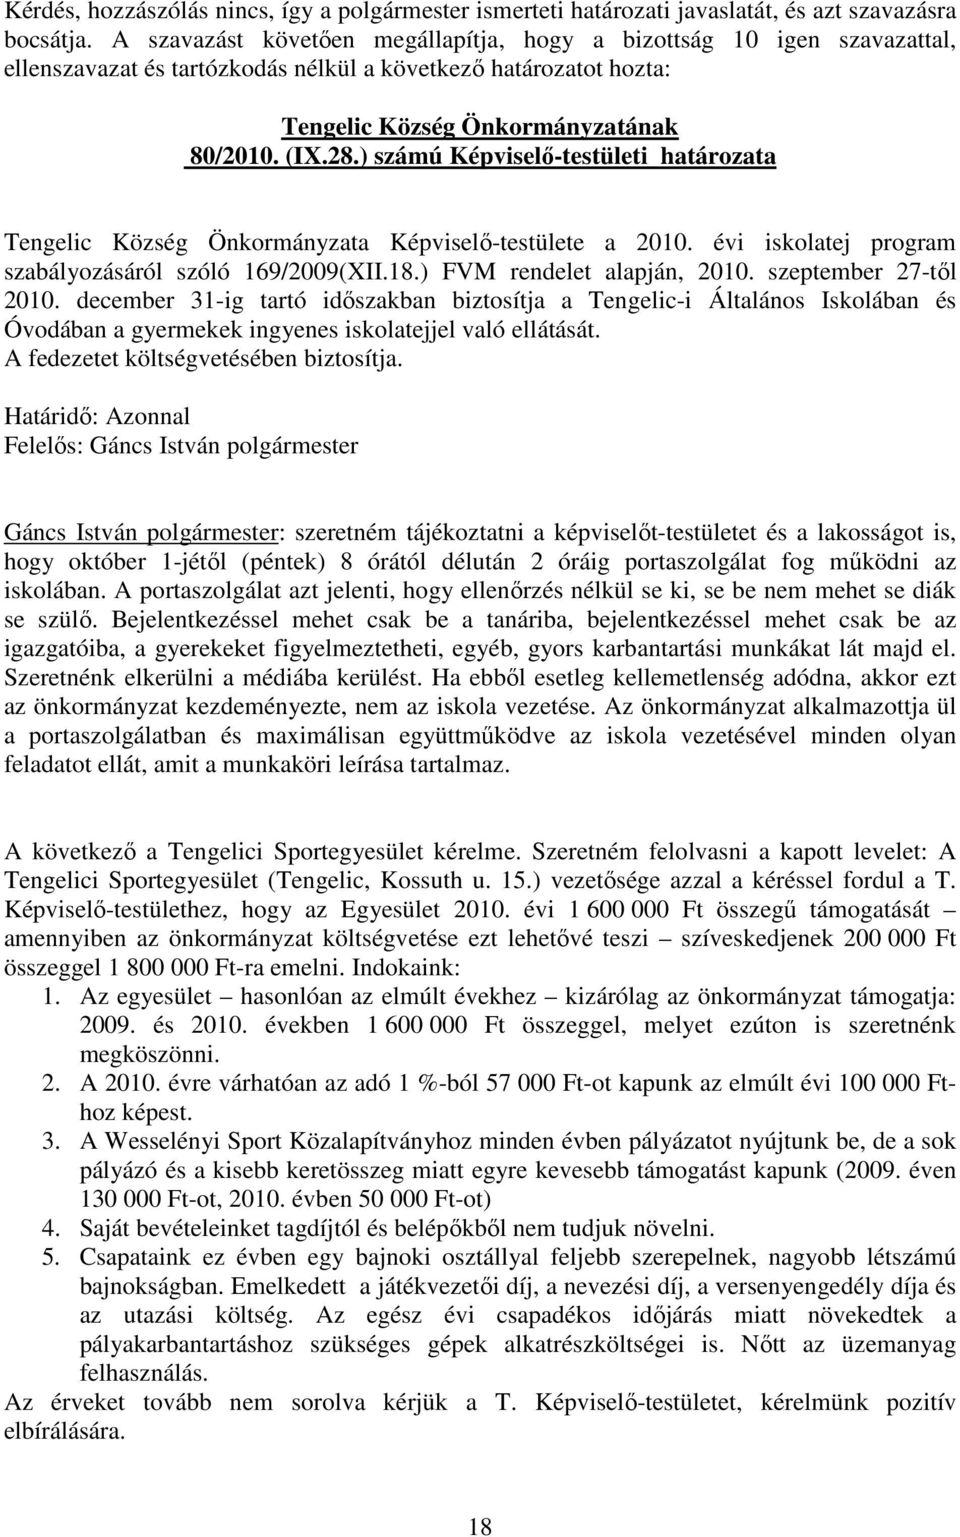 ) számú Képviselı-testületi határozata Tengelic Község Önkormányzata Képviselı-testülete a 2010. évi iskolatej program szabályozásáról szóló 169/2009(XII.18.) FVM rendelet alapján, 2010.